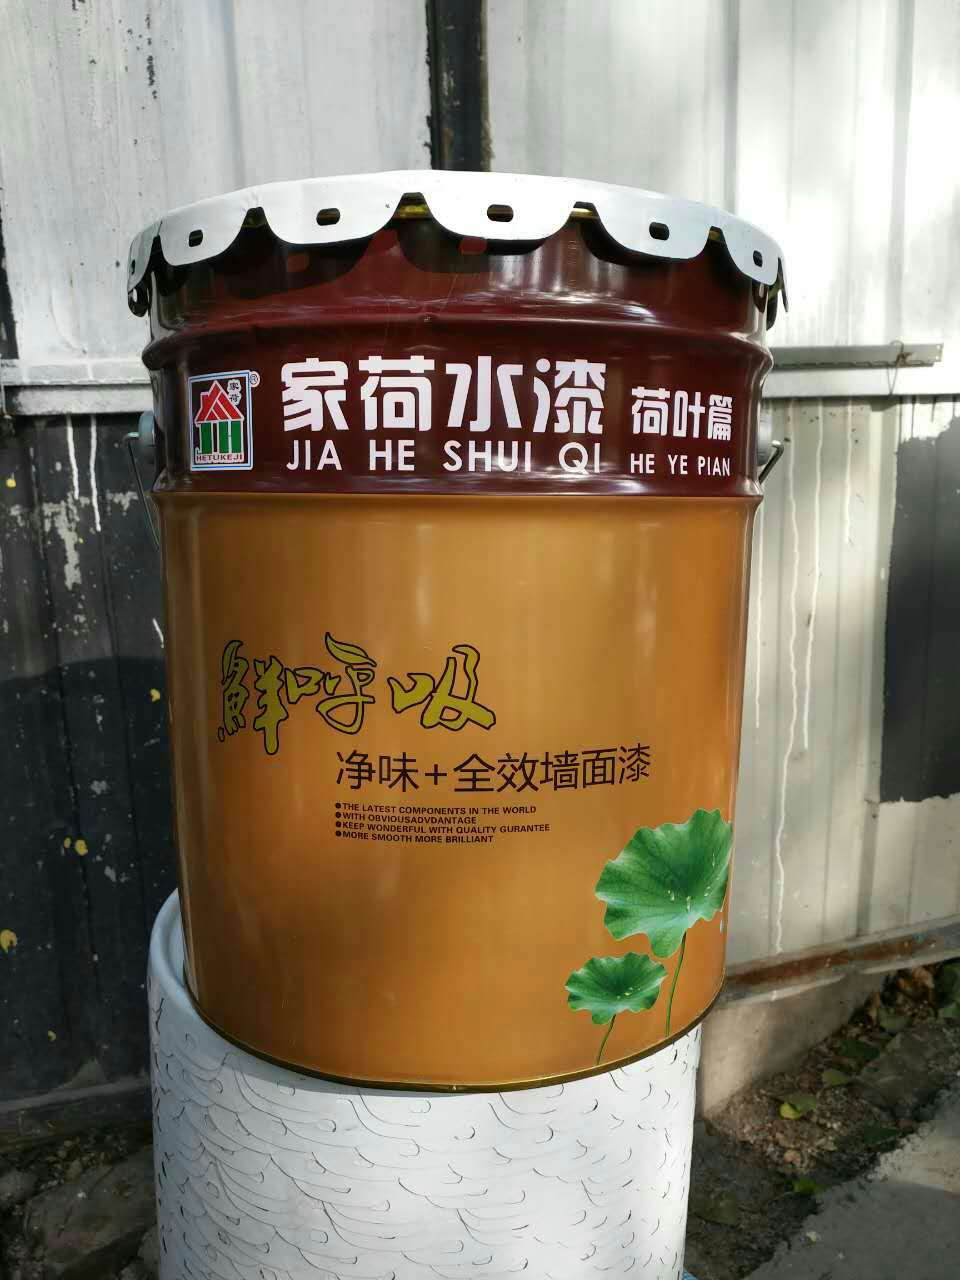 家荷生态植物膜JH6400A耐涂鸦耐粘贴耐擦洗内外墙乳胶漆高耐候外墙荷叶漆